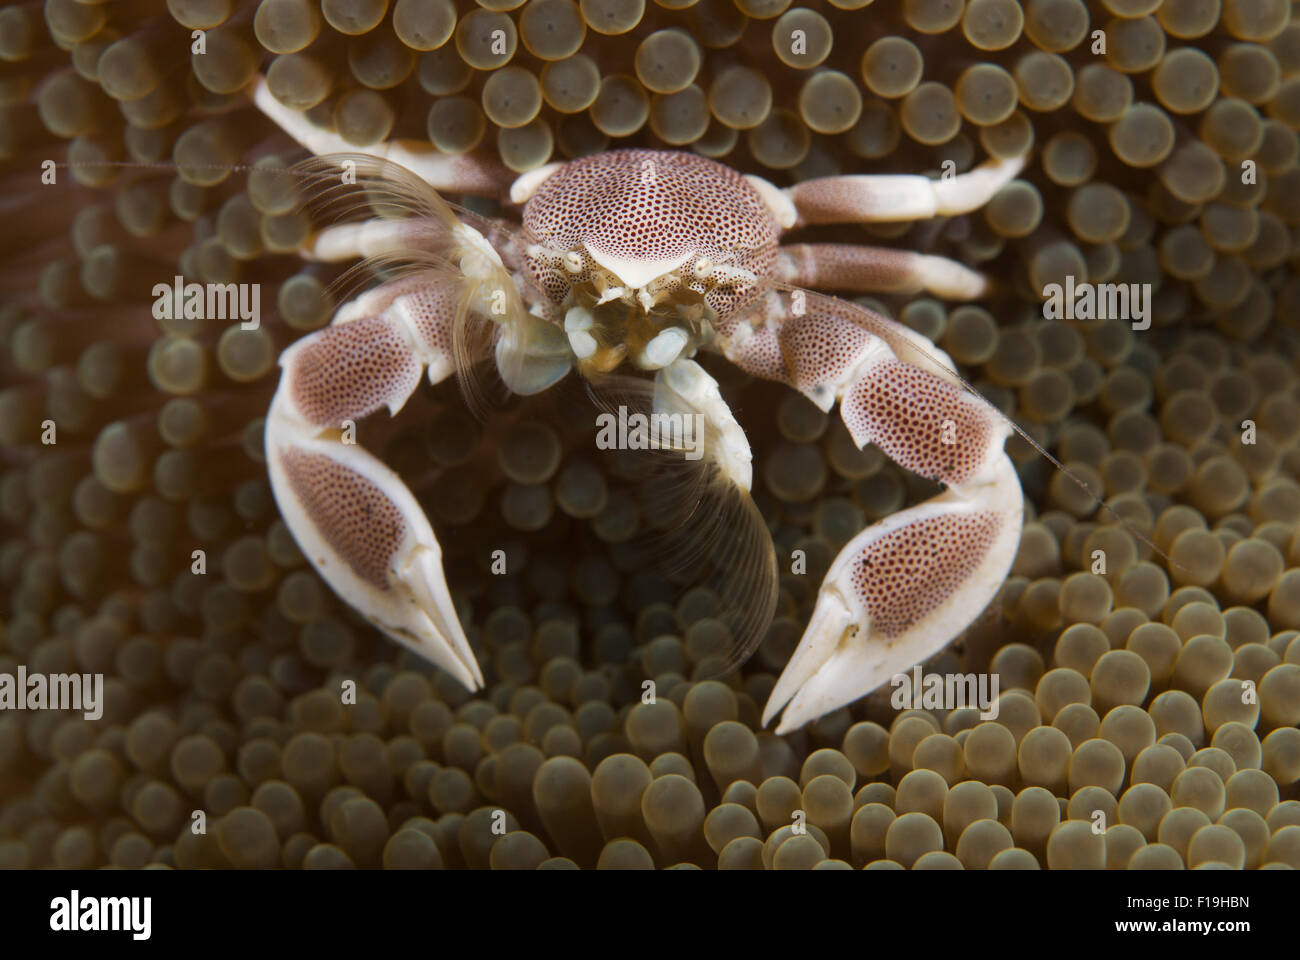 px8578-D. Porzellan-Krabbe (Neopetrolisthes Maculatus) füttern. Gefiederten "Handschuhe" fangen treibenden Pflanzen und tierischen Materie. Indonesien Stockfoto